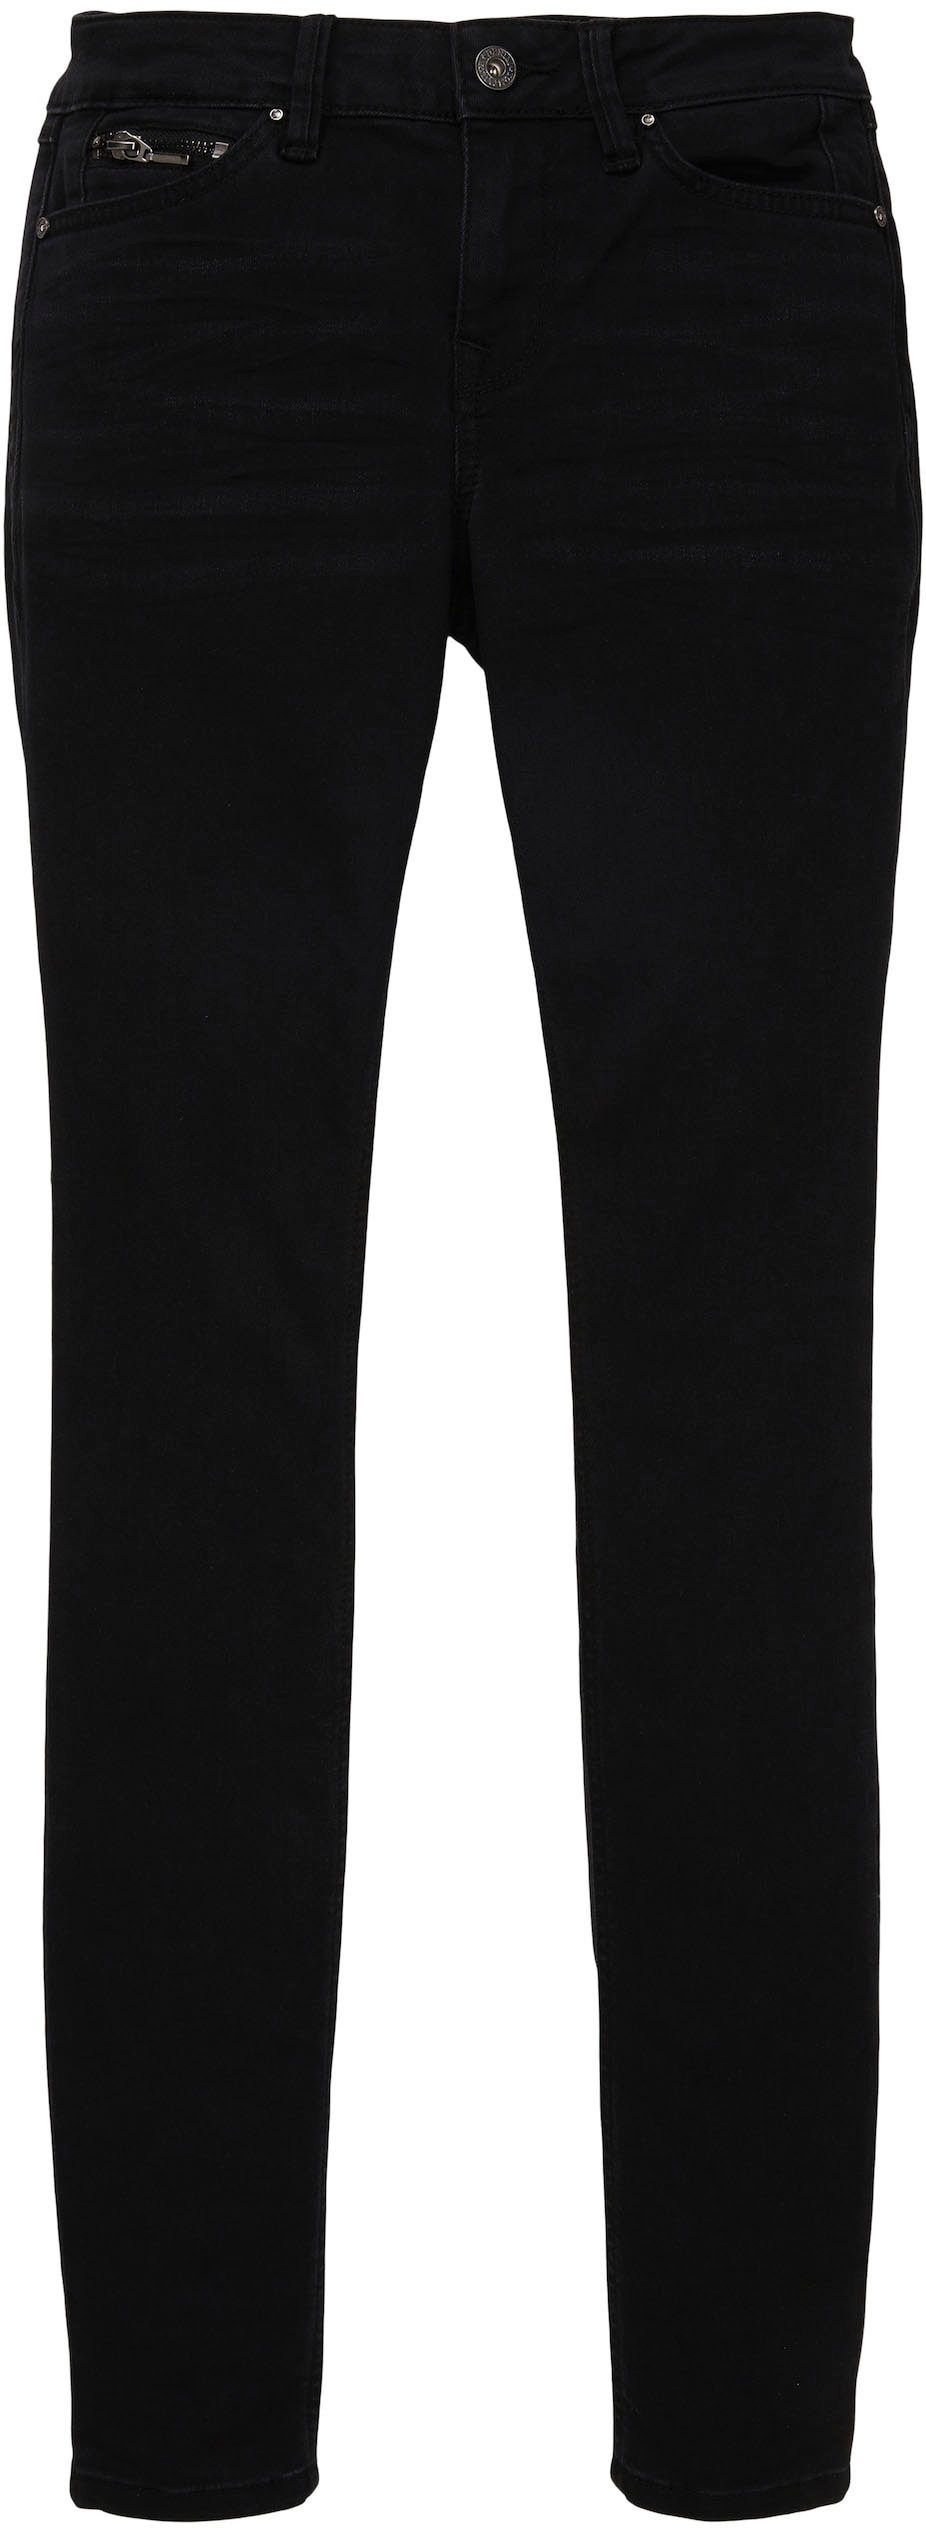 TOM TAILOR Denim Skinny-fit-Jeans stone JONA black denim clean dark